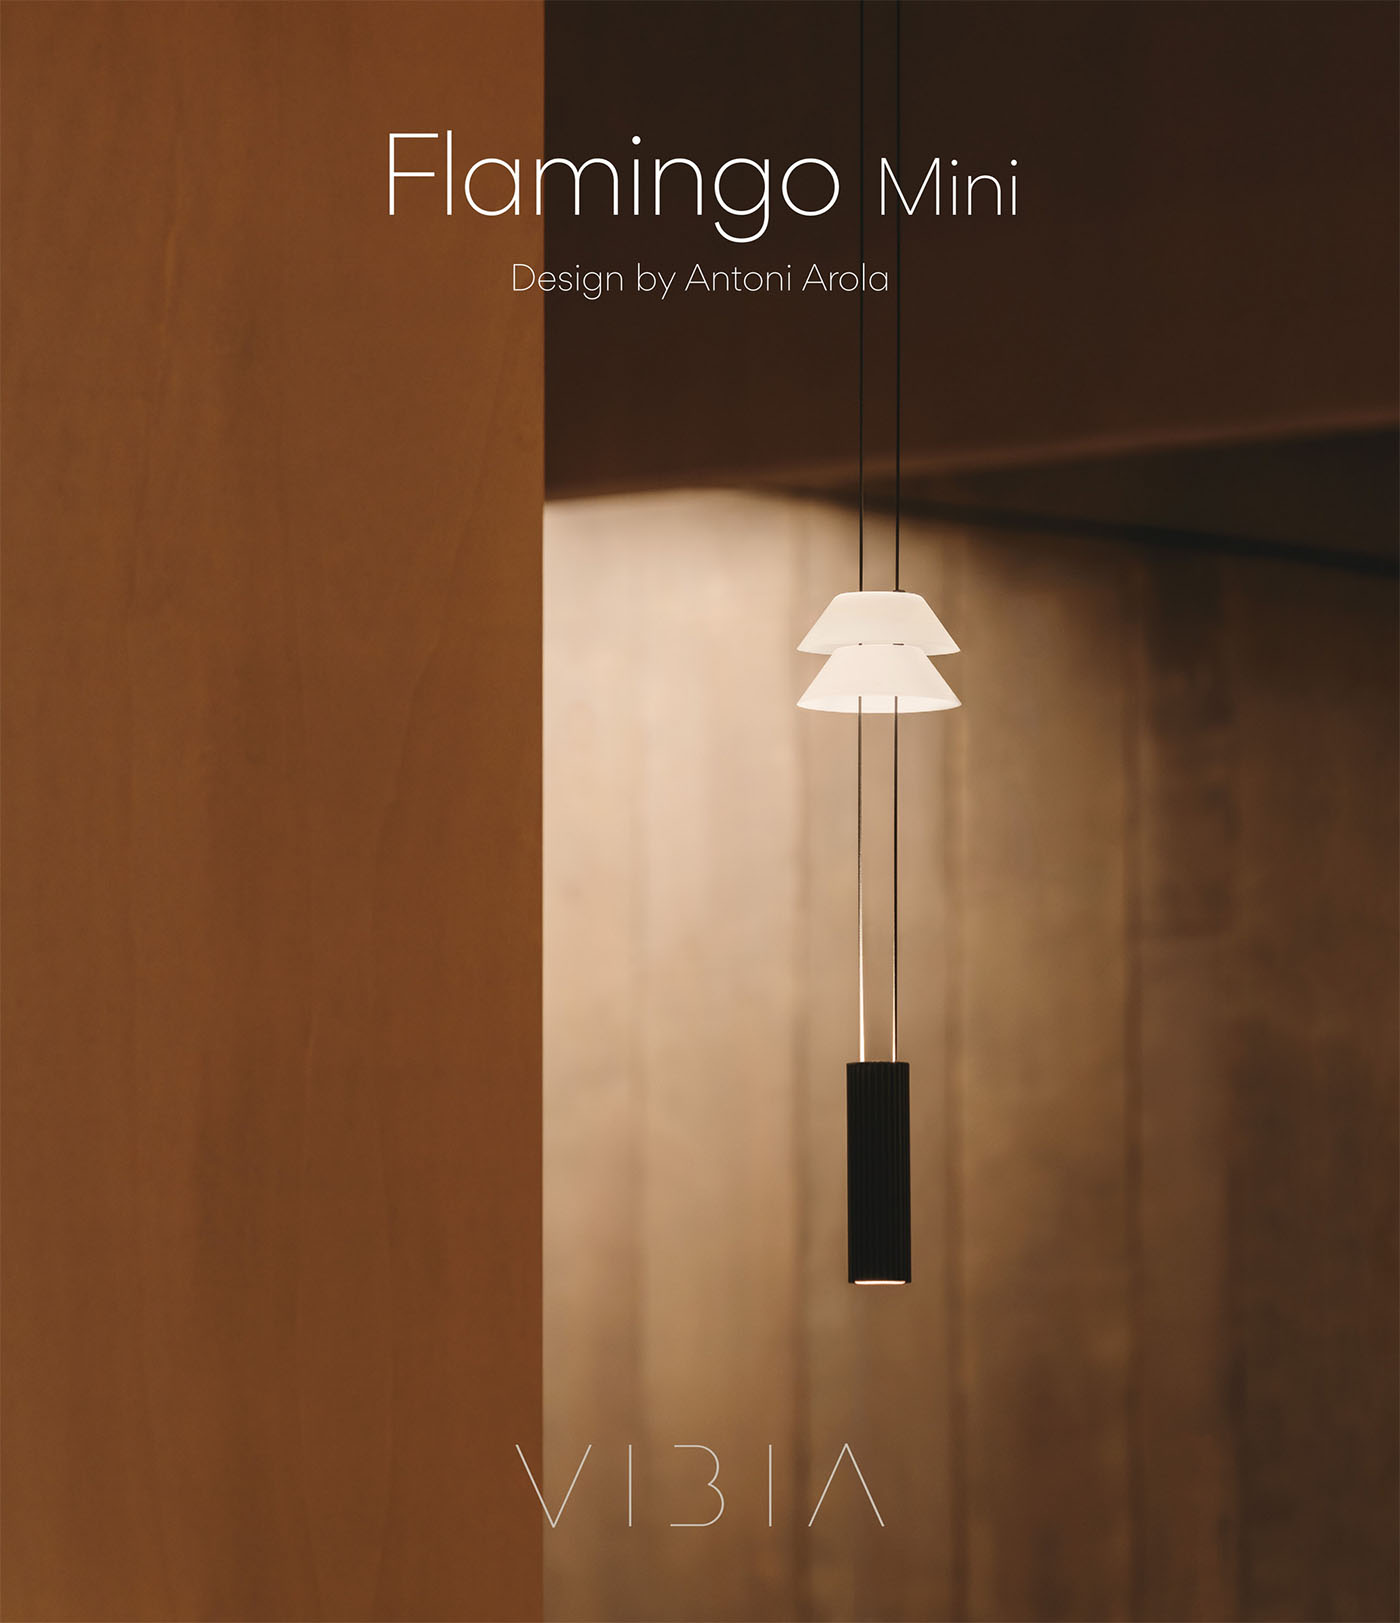 Flamingo Mini Leuchten-Kollektion by Antoni Arola